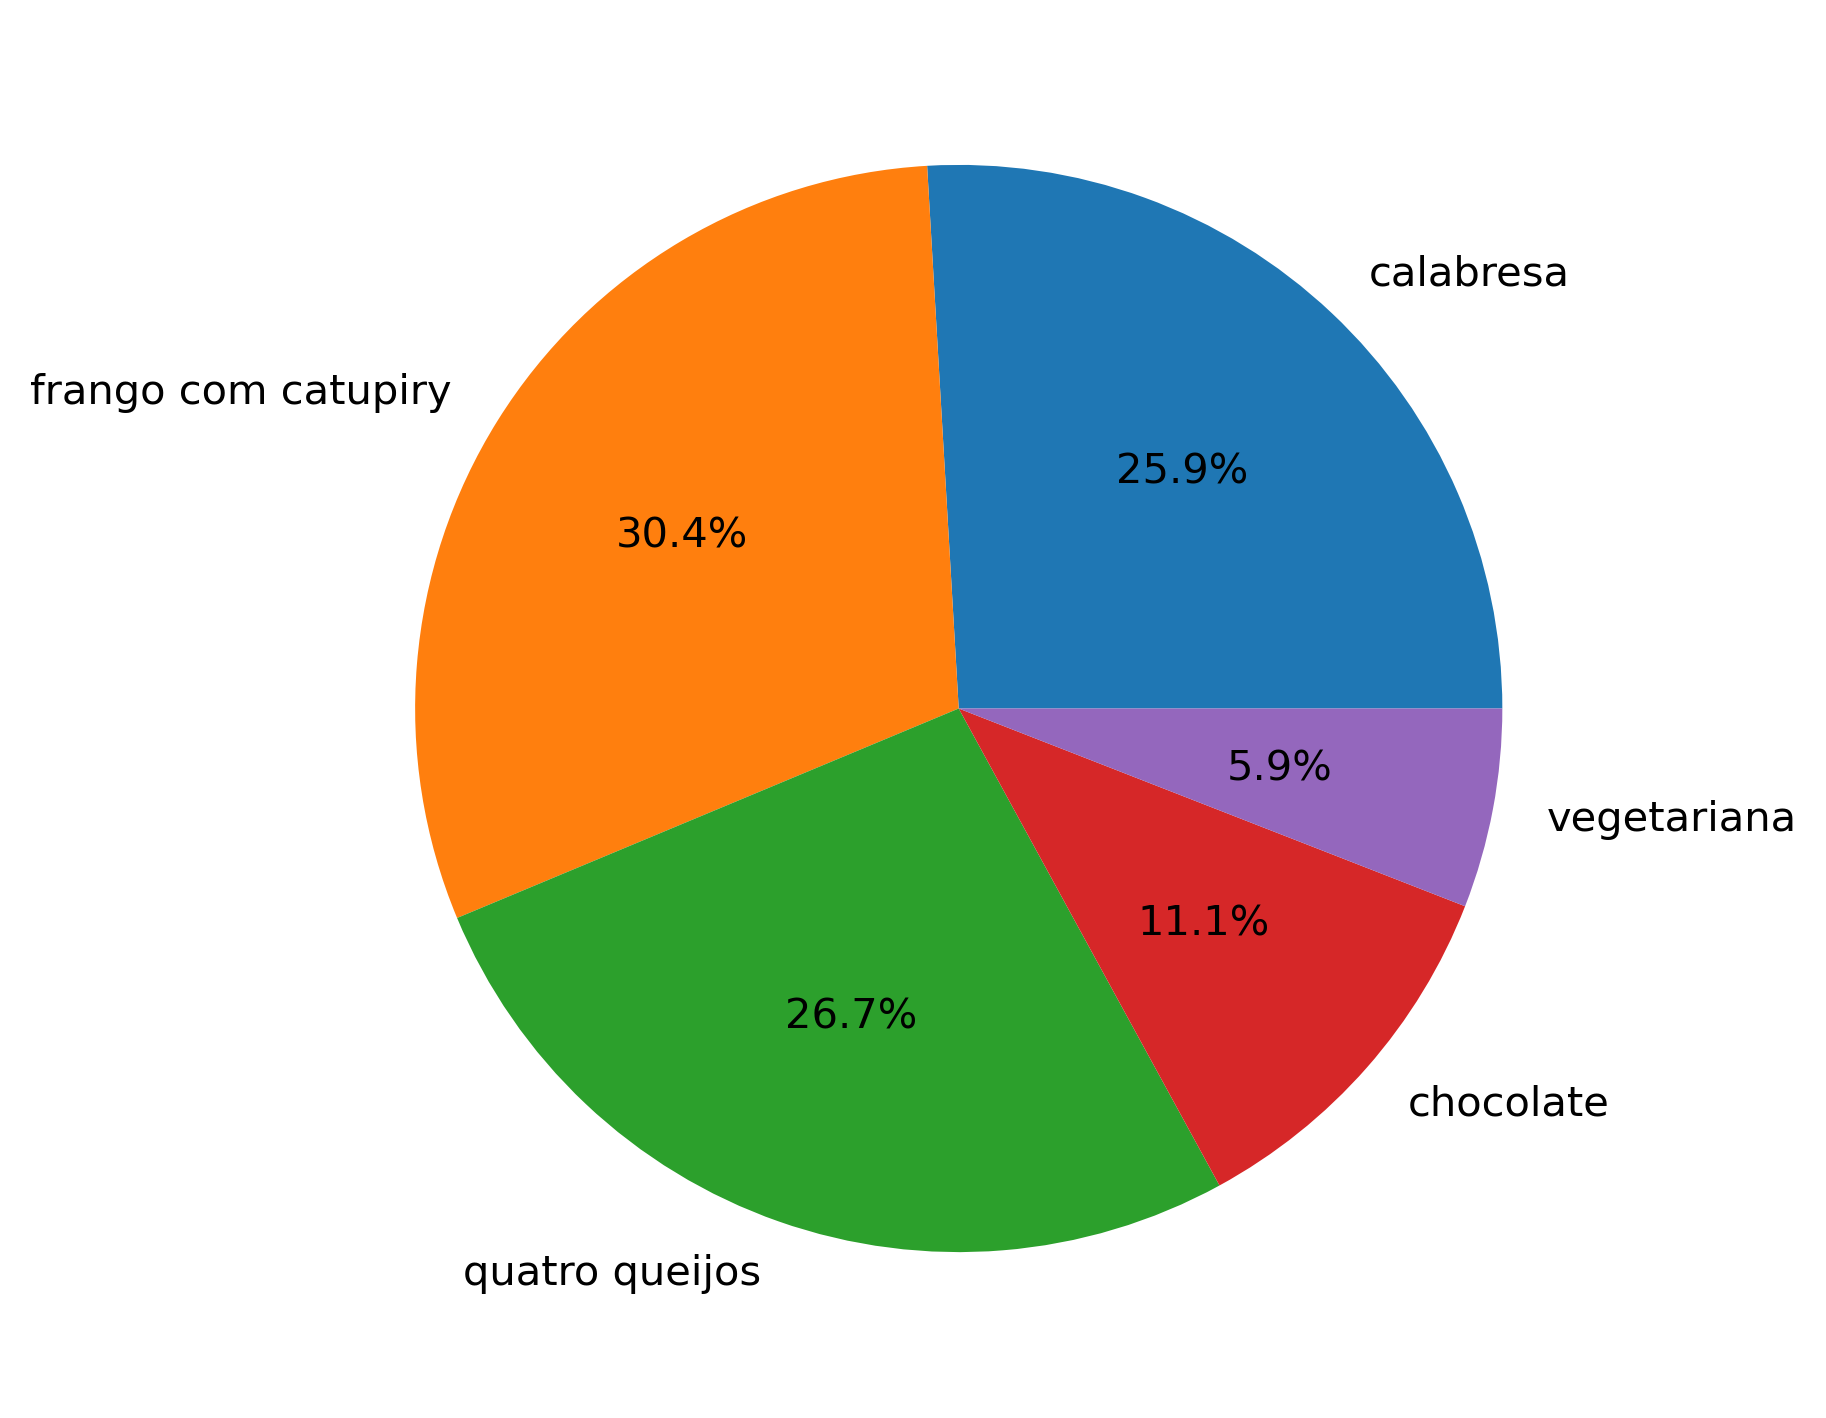 gráfico de pizza desenhado com matplotlib com a porcentagem que cada fatia ocupa na respectiva fatia.